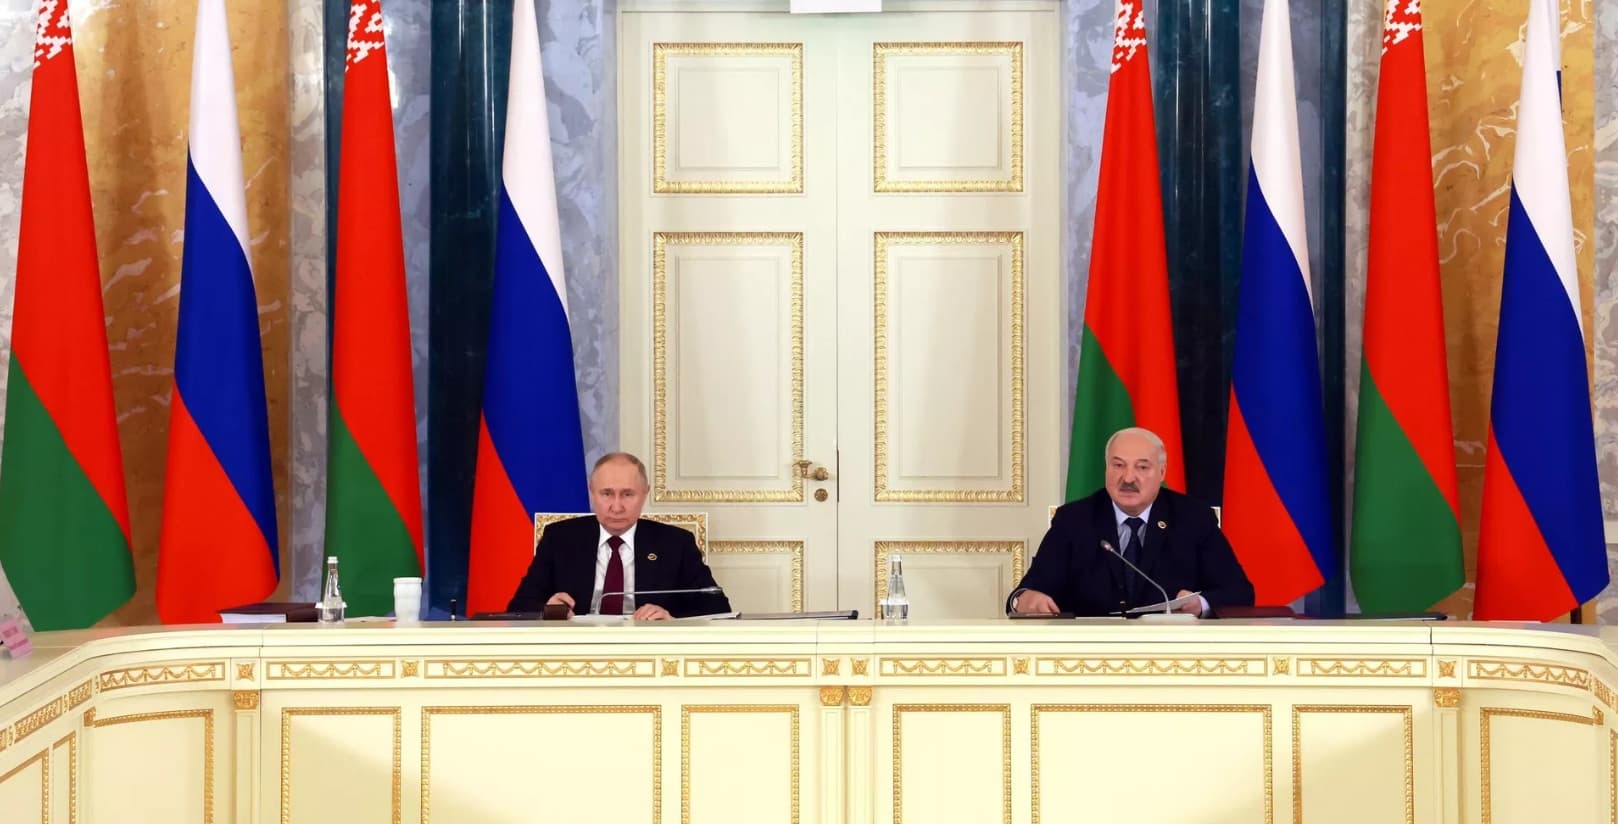 Путин и Лукашенко подписали постановление о медиахолдинге Союзного государства